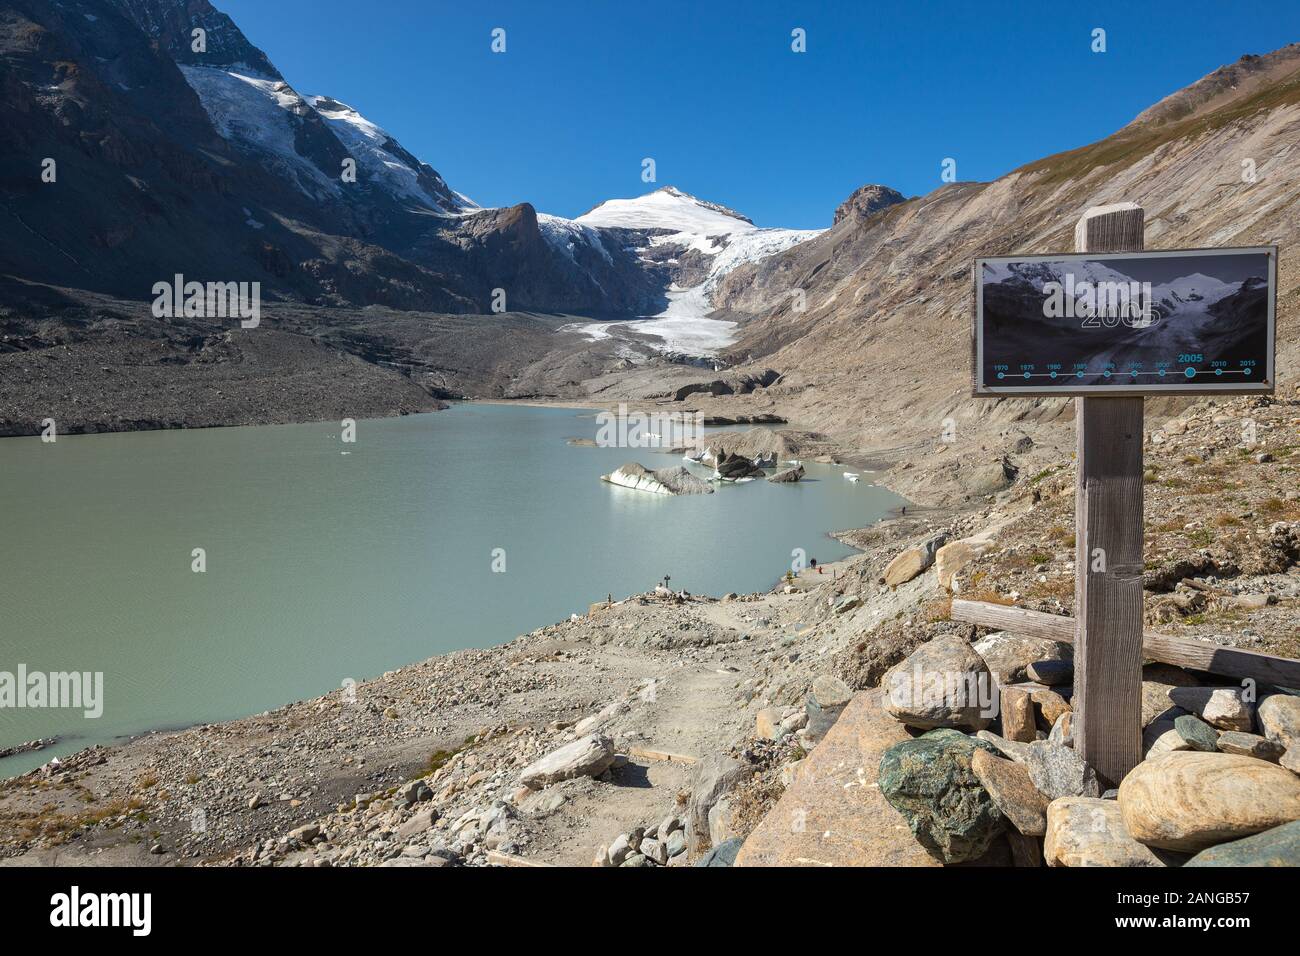 Glocknergruppe massiccio alpino. Il ghiacciaio Pasterze. Proglacial lake. Le schede di informazioni di livello glaciale confronto. Alpi austriache. L'Europa. Foto Stock